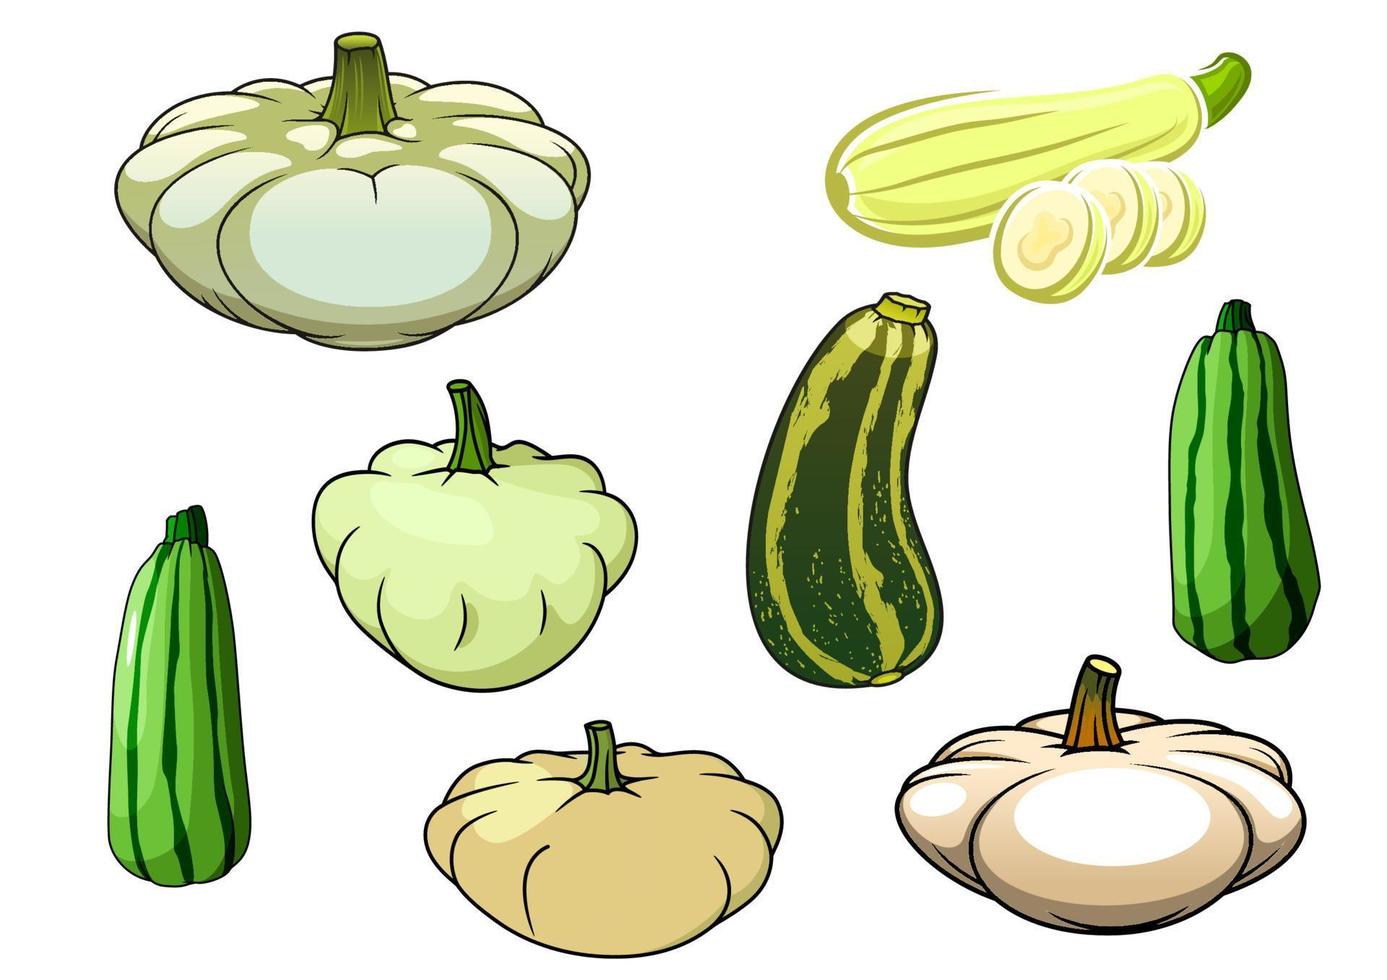 Pumpkin, zucchini and pattypan squash vector